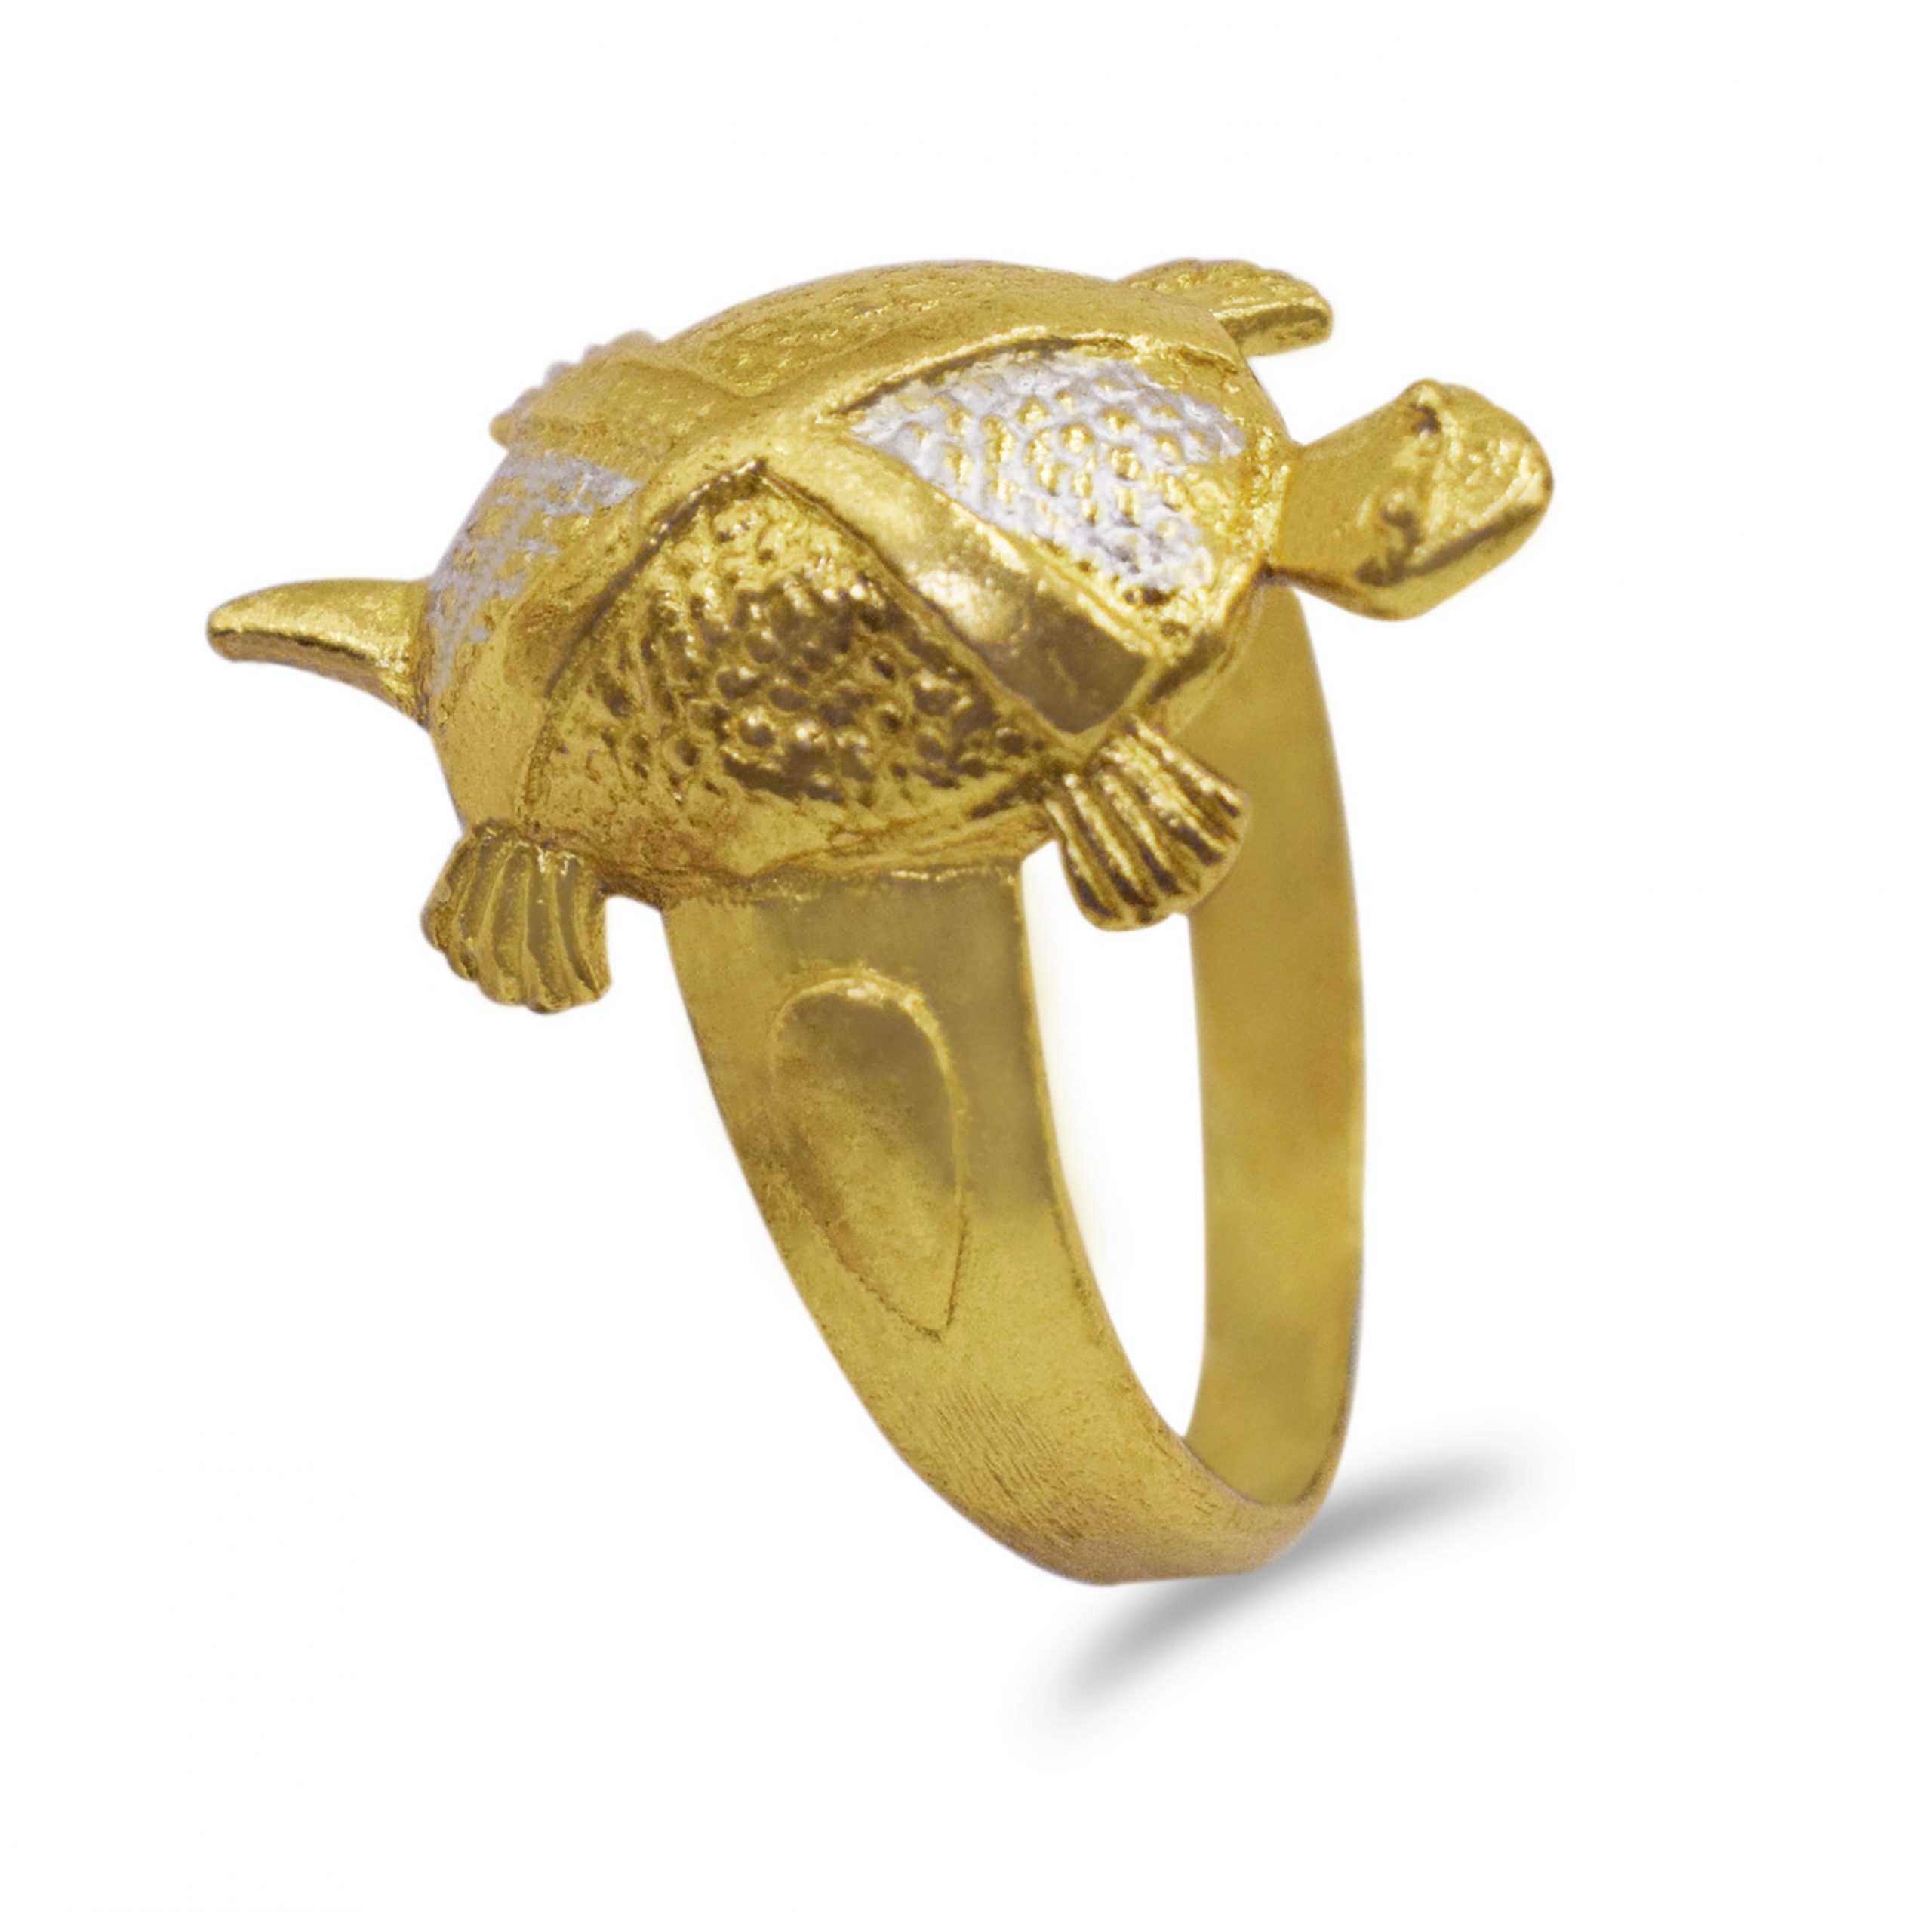 Turtle Ring: ये 4 राशि के लोग भूलकर भी न पहनें कछुए की अंगूठी, कंगाल होने  के साथ करियर भी हो जाएगा तबाह | turtule ring tips these people should not  wear